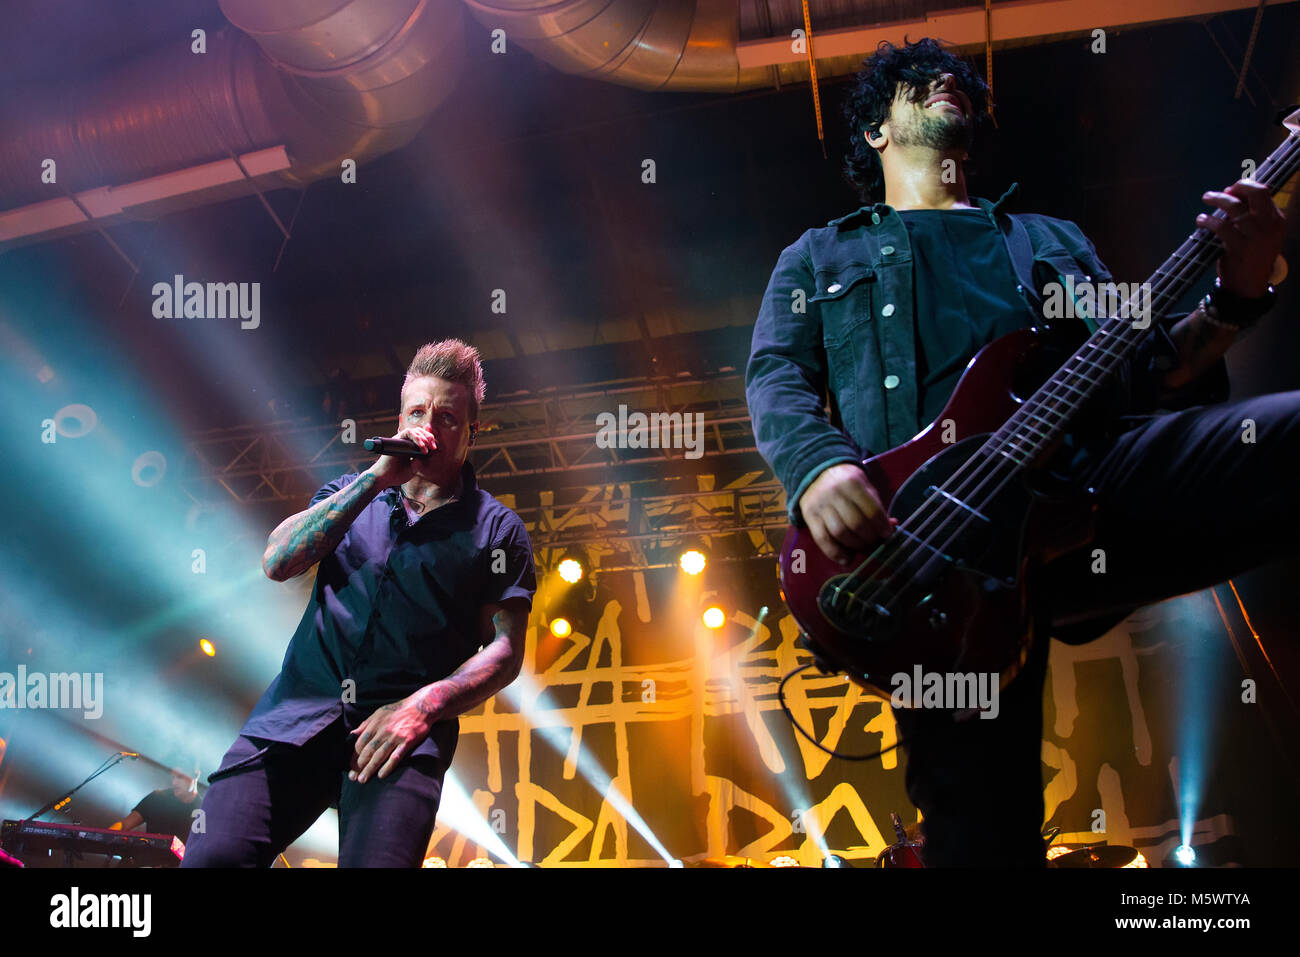 Barcelone - 14 OCT : Papa Roach (rock band) produisent en concert à Razzmatazz Club le 14 octobre 2017 à Barcelone, Espagne. Banque D'Images